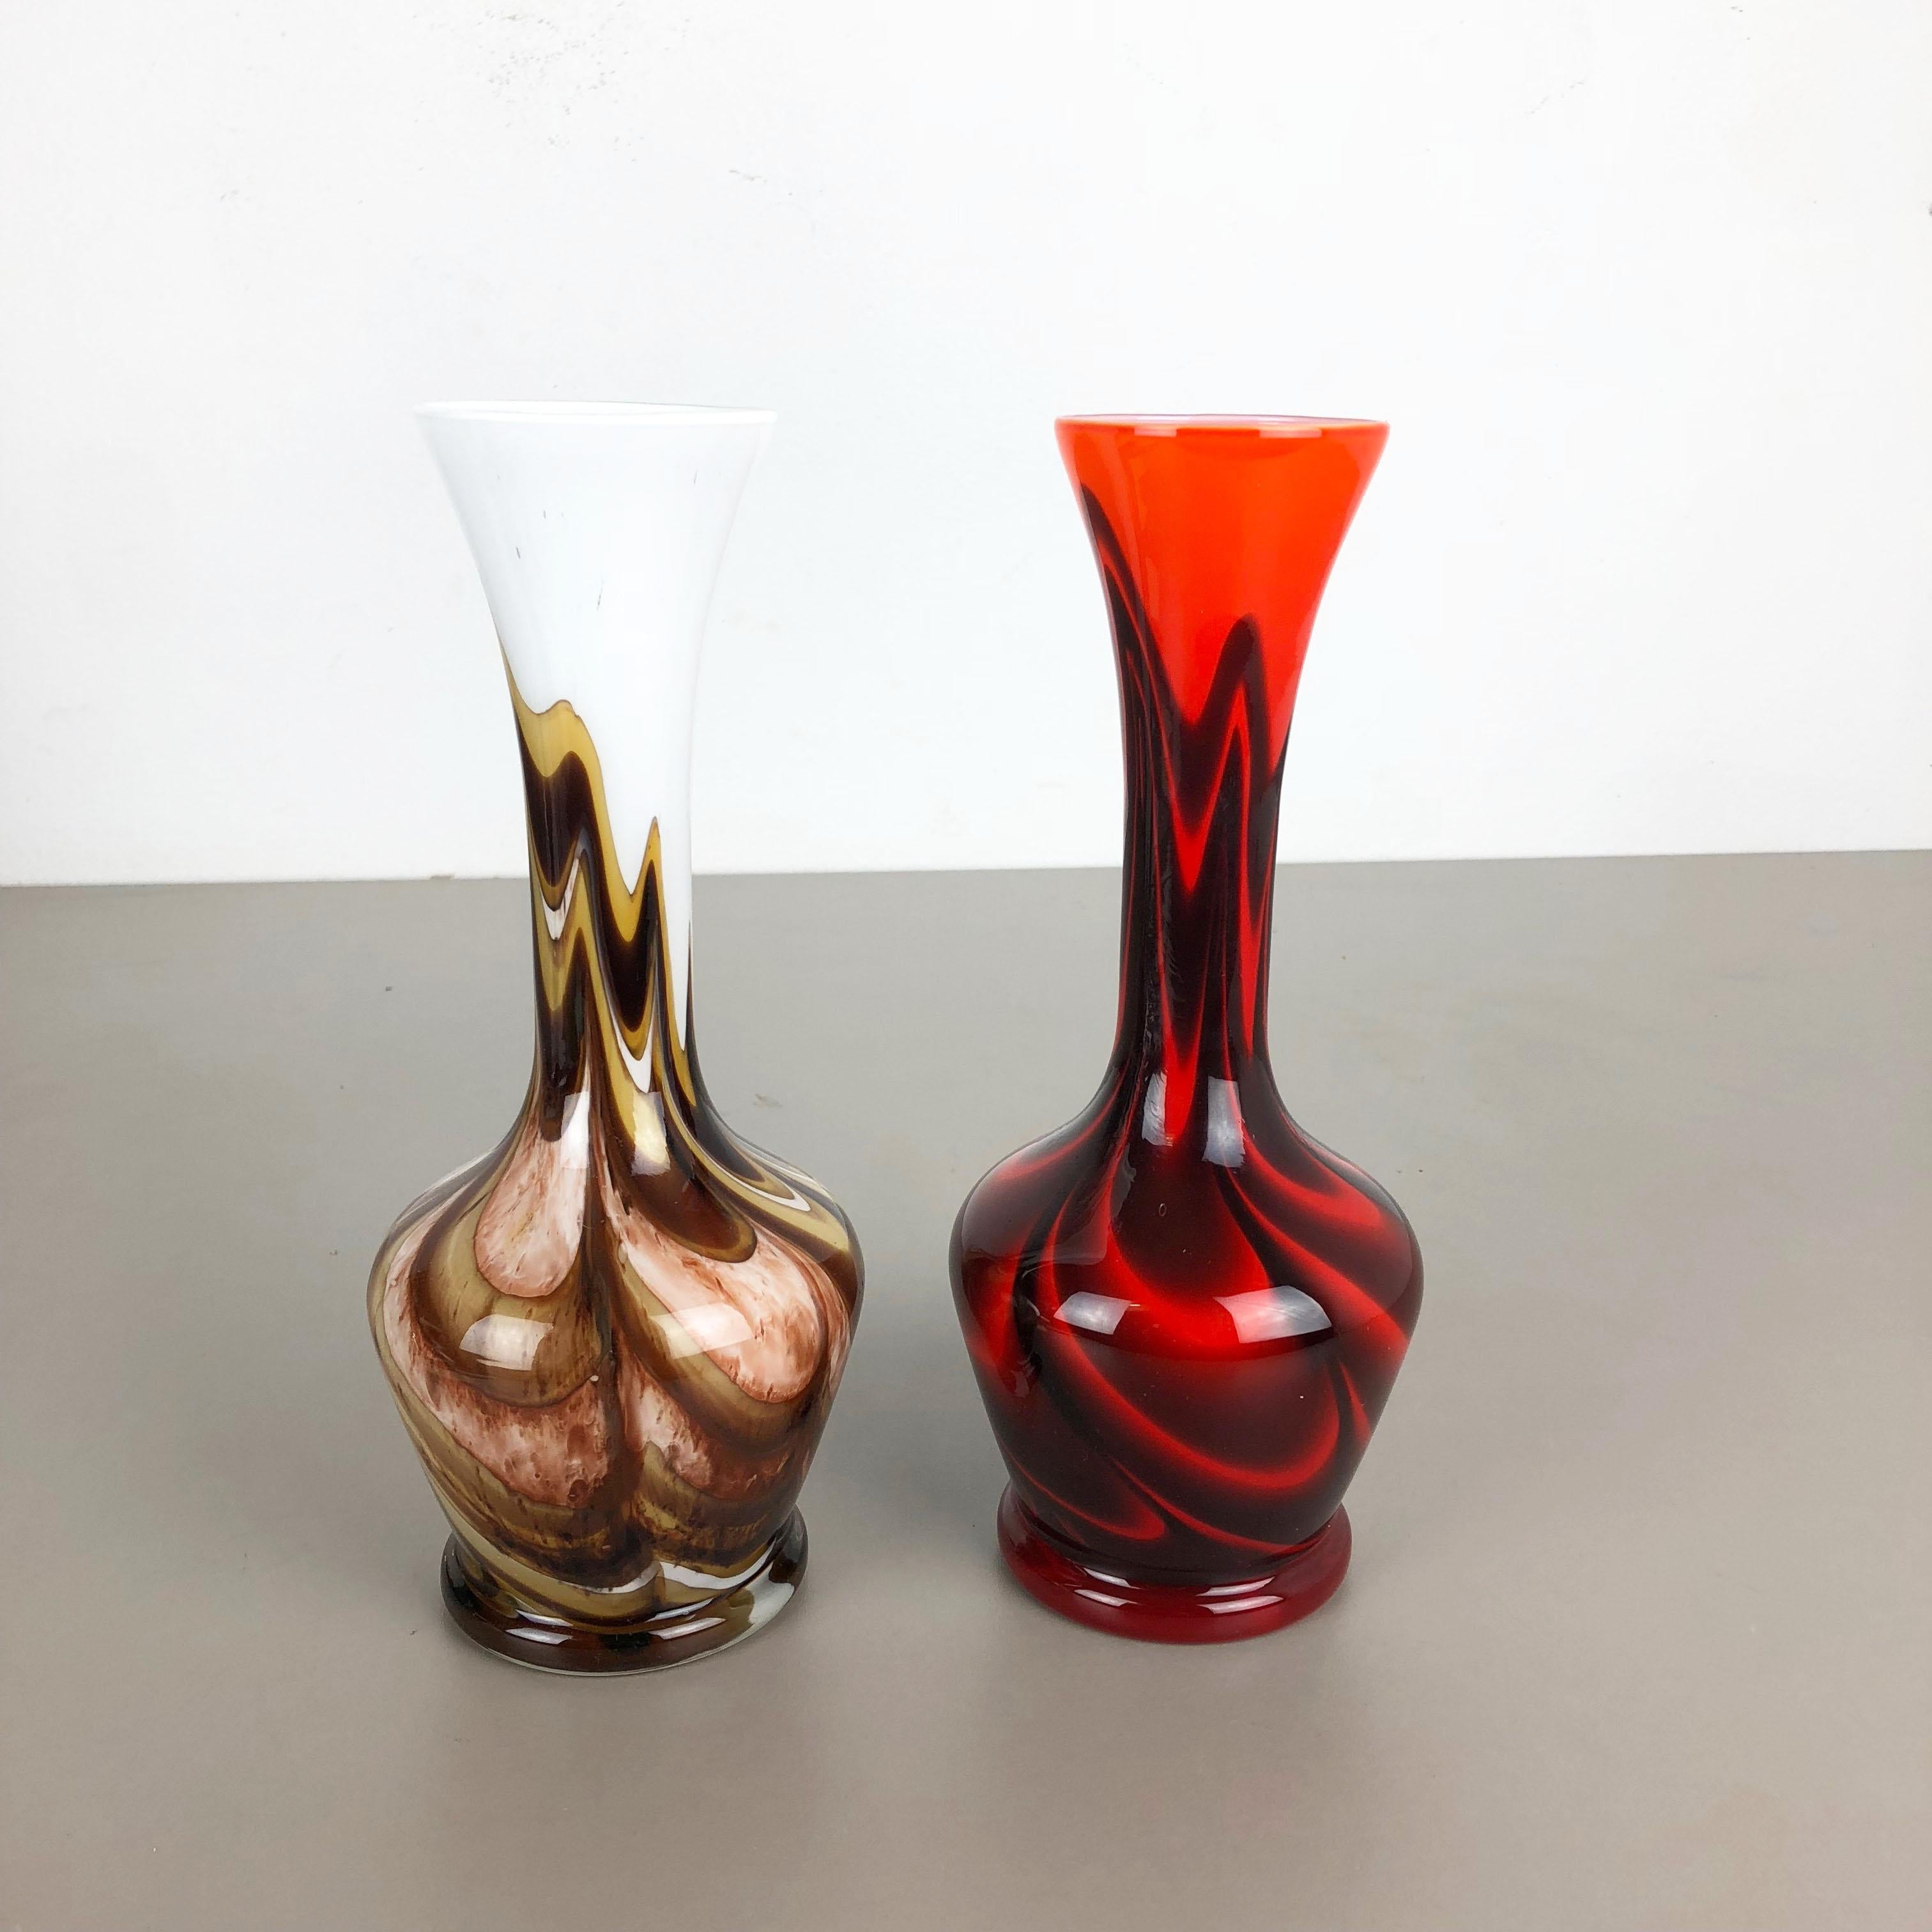 Artikel:

Pop Art Vase 2er Set


Produzent:

Opalin Florenz


Entwurf:

Carlo Moretti



Jahrzehnt:

1970s


Beschreibung:

originales mundgeblasenes Vasen-Set aus den 1970er Jahren, hergestellt in Italien von Opaline Florenz.